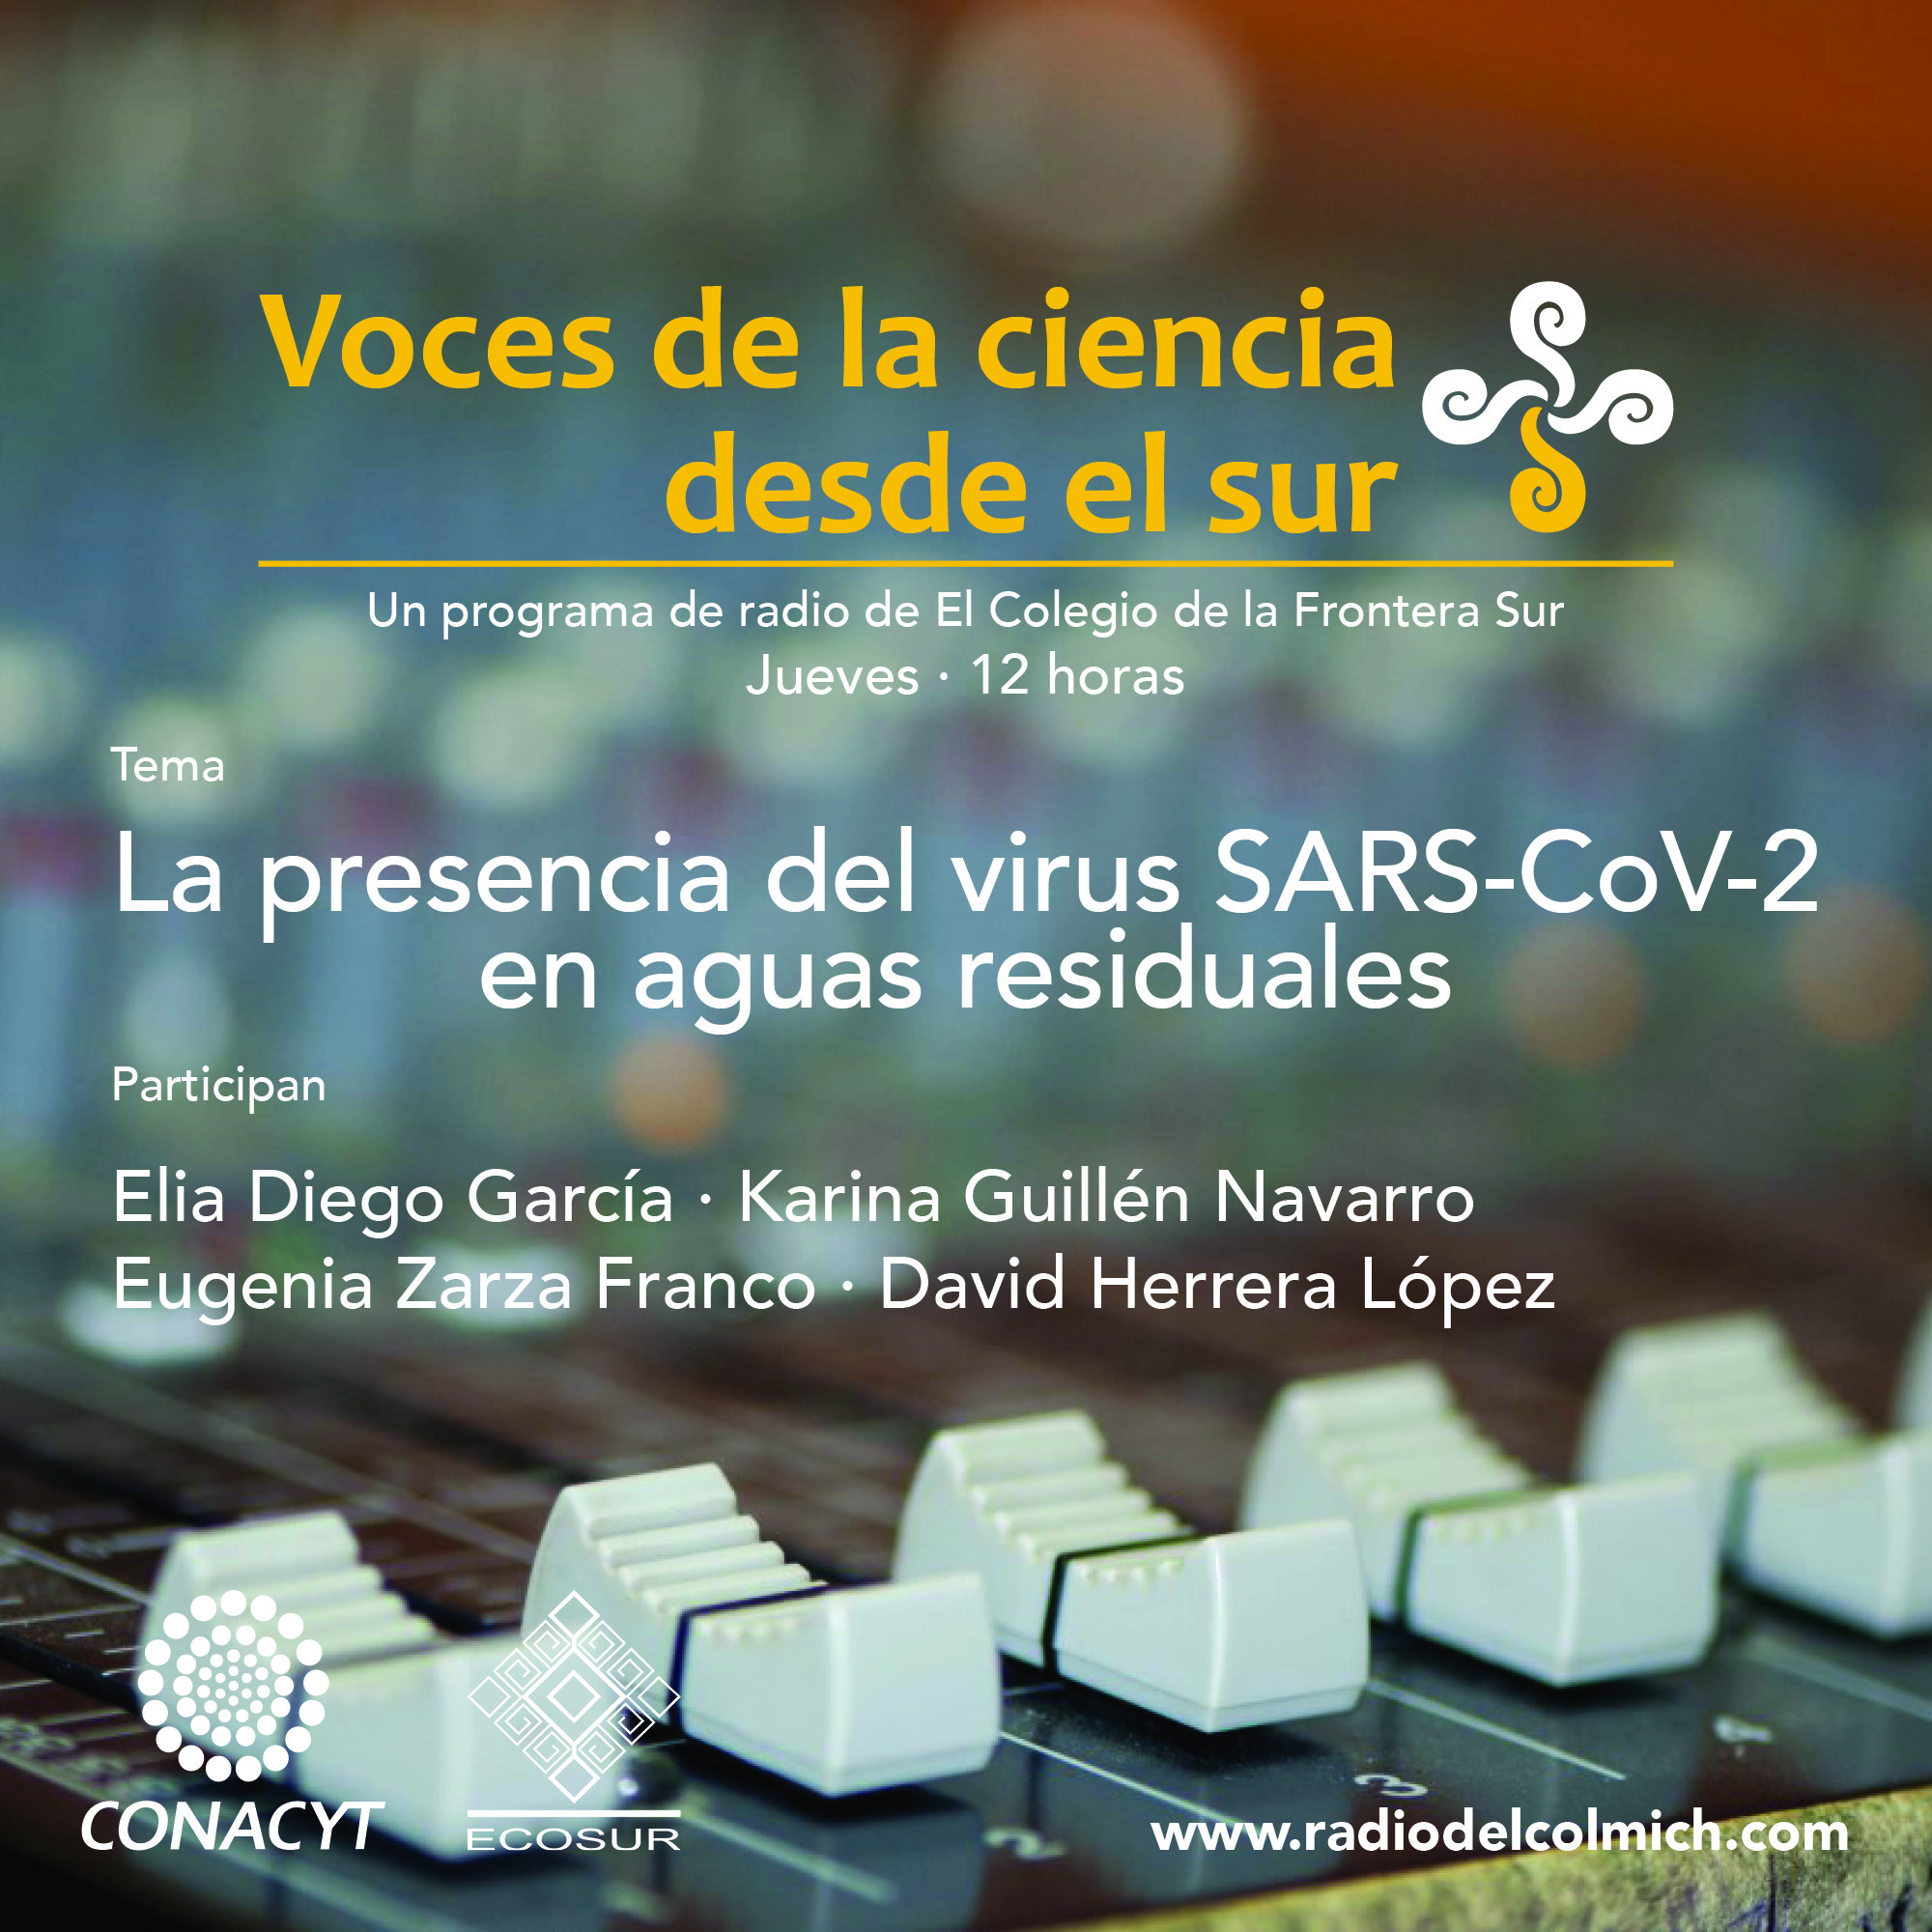 Podcast: “La presencia del virus Sars-CoV-2 en aguas residuales”